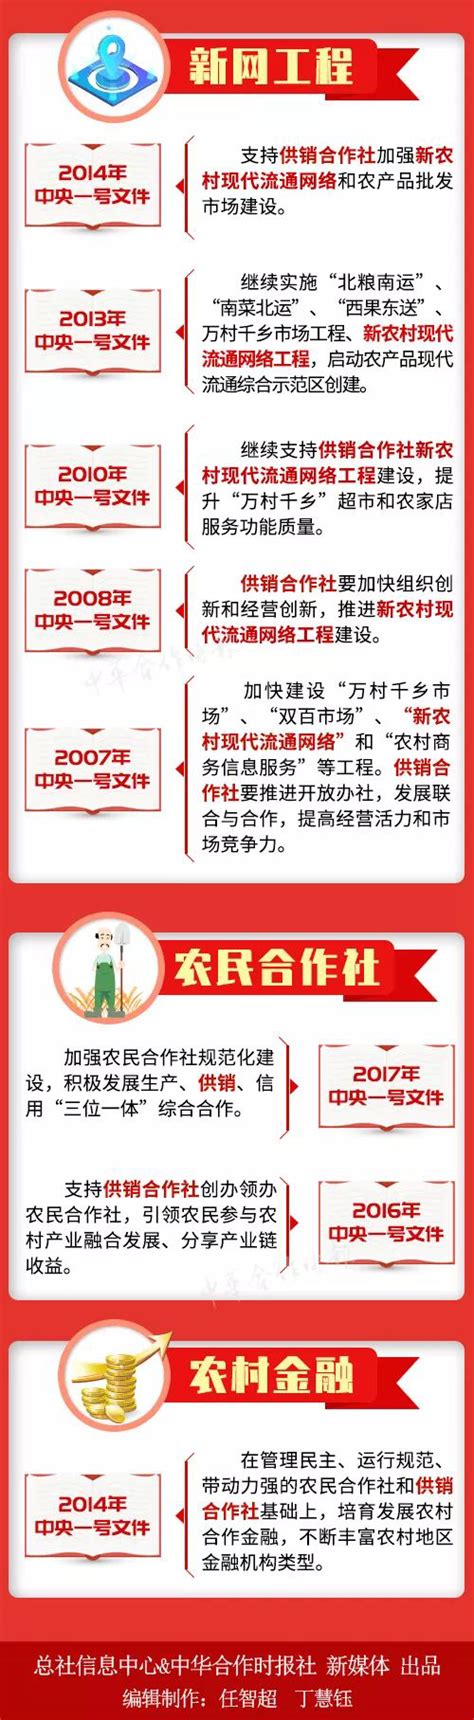 2021年陕西省各地区GDP排行榜：榆林增速最快（图）-中商情报网